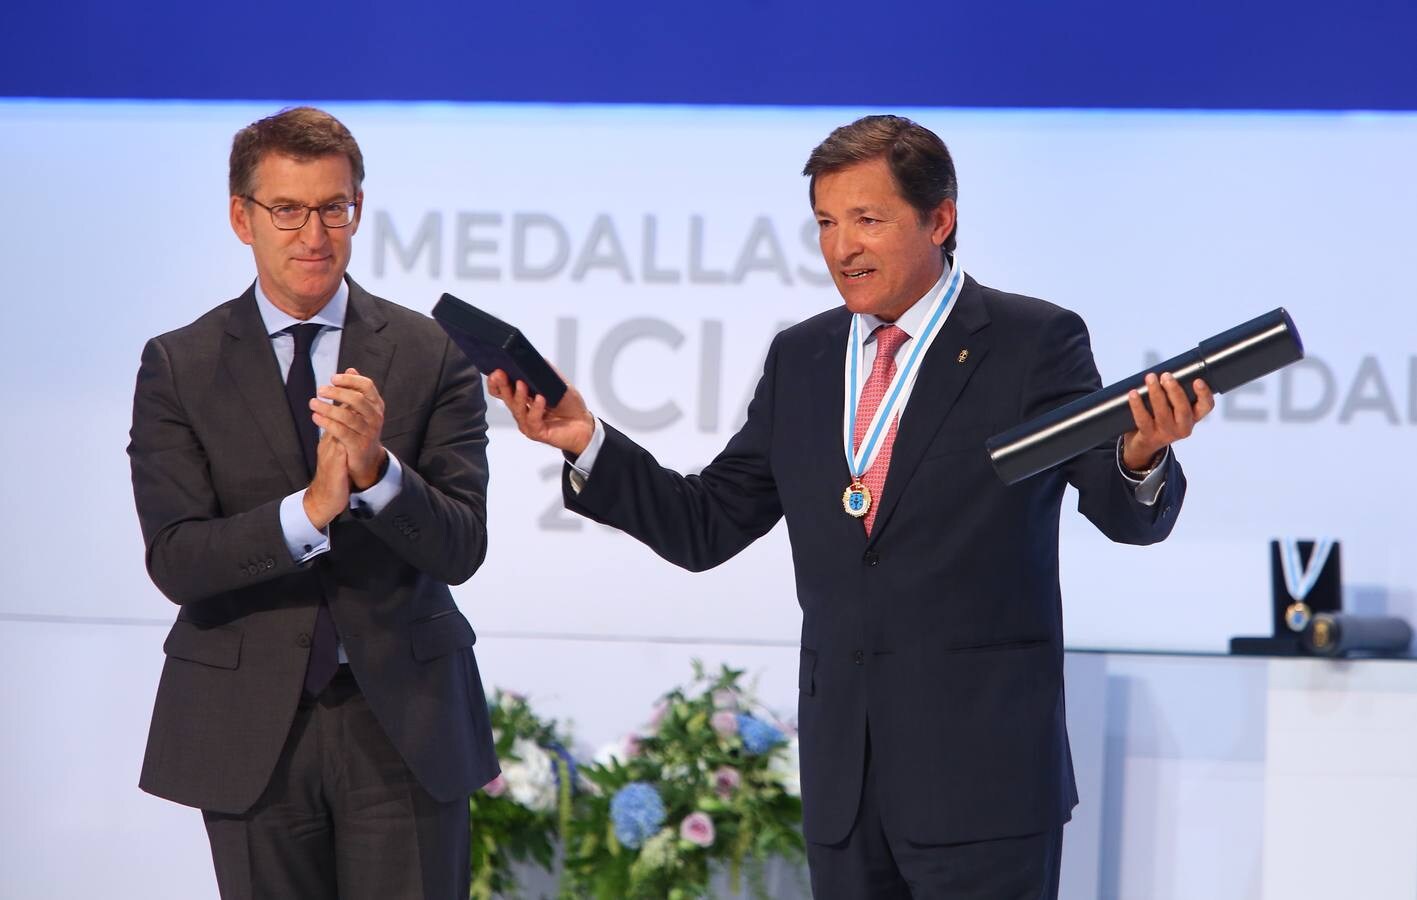 El expresidente del Principado de Asturias, Javier Fernández (d), recibe la Medalla de Oro de Galicia de manos del presidente de la Xunta de Galicia, Alberto Núñez Feijoo (i).